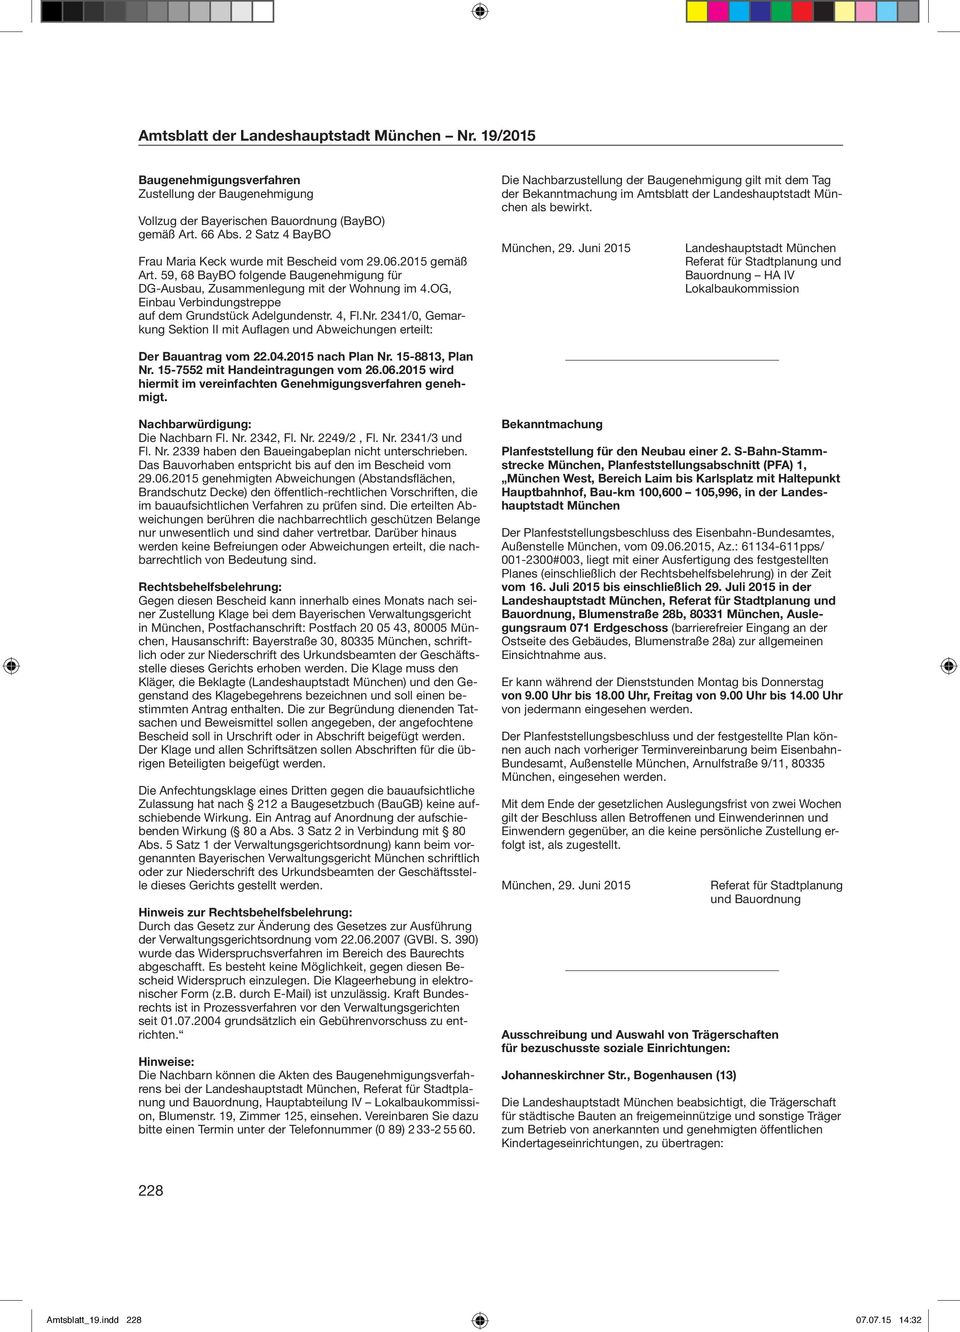 2341/0, Gemarkung Sektion II mit Auflagen und Abweichungen erteilt: Die Nachbarzustellung der Baugenehmigung gilt mit dem Tag der Bekanntmachung im Amtsblatt der Landeshauptstadt München als bewirkt.